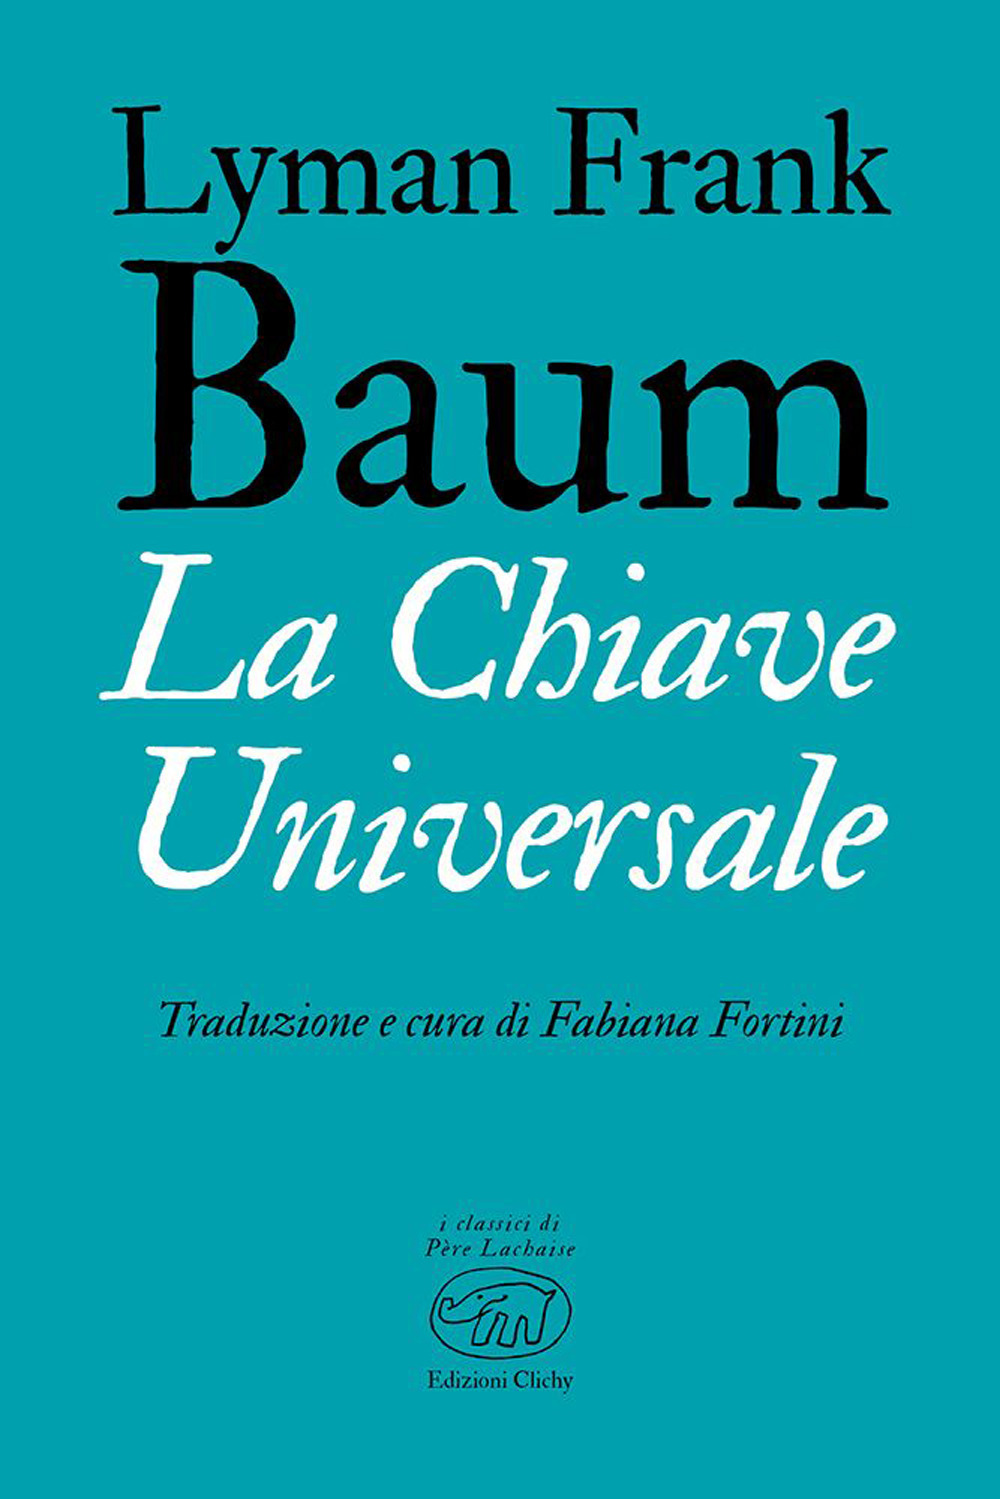 La chiave universale - L. Frank Baum - Edizioni Clichy